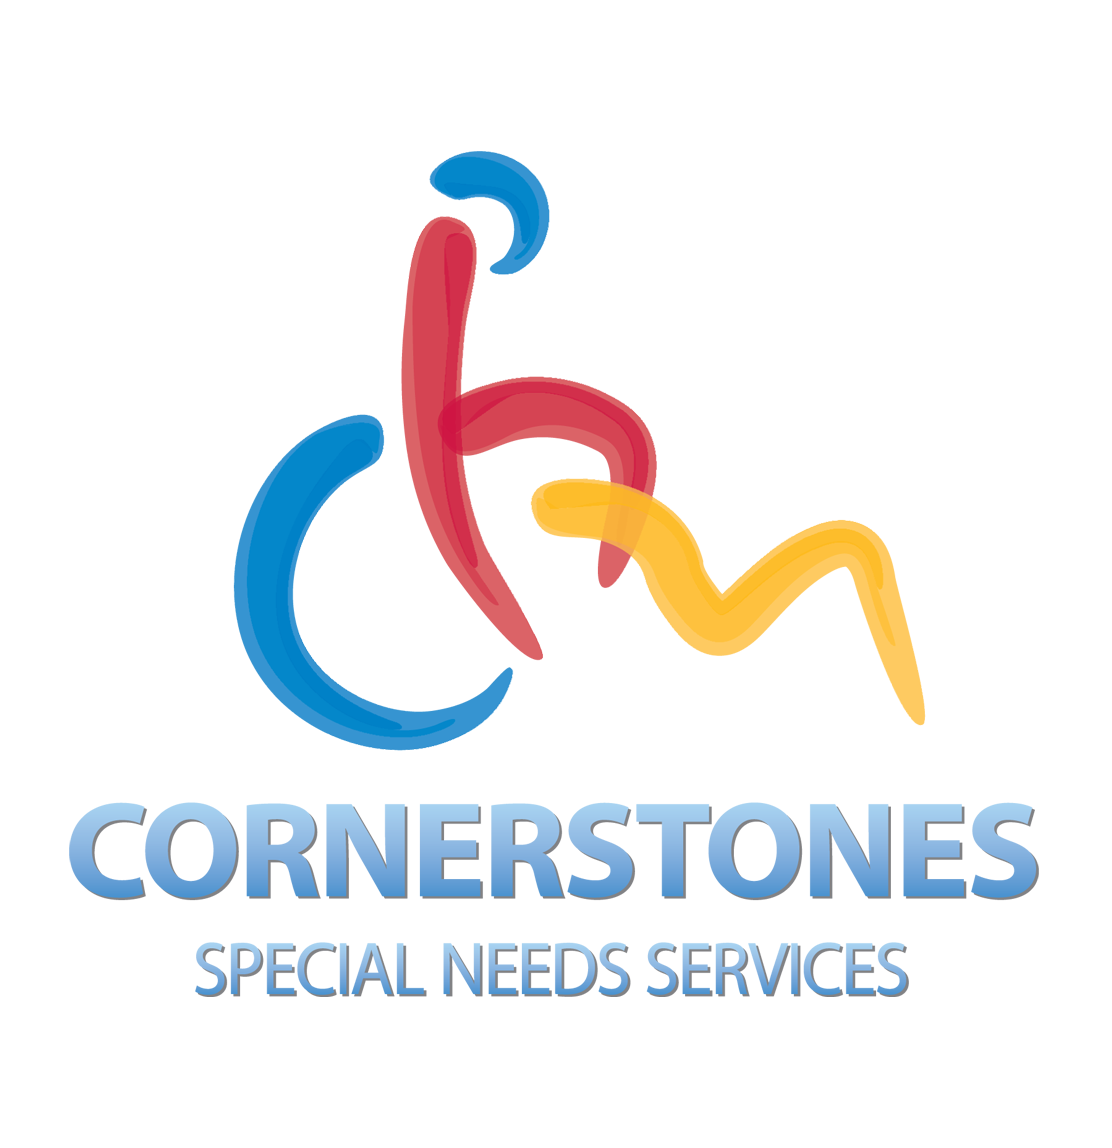 Cornerstones Special Needs